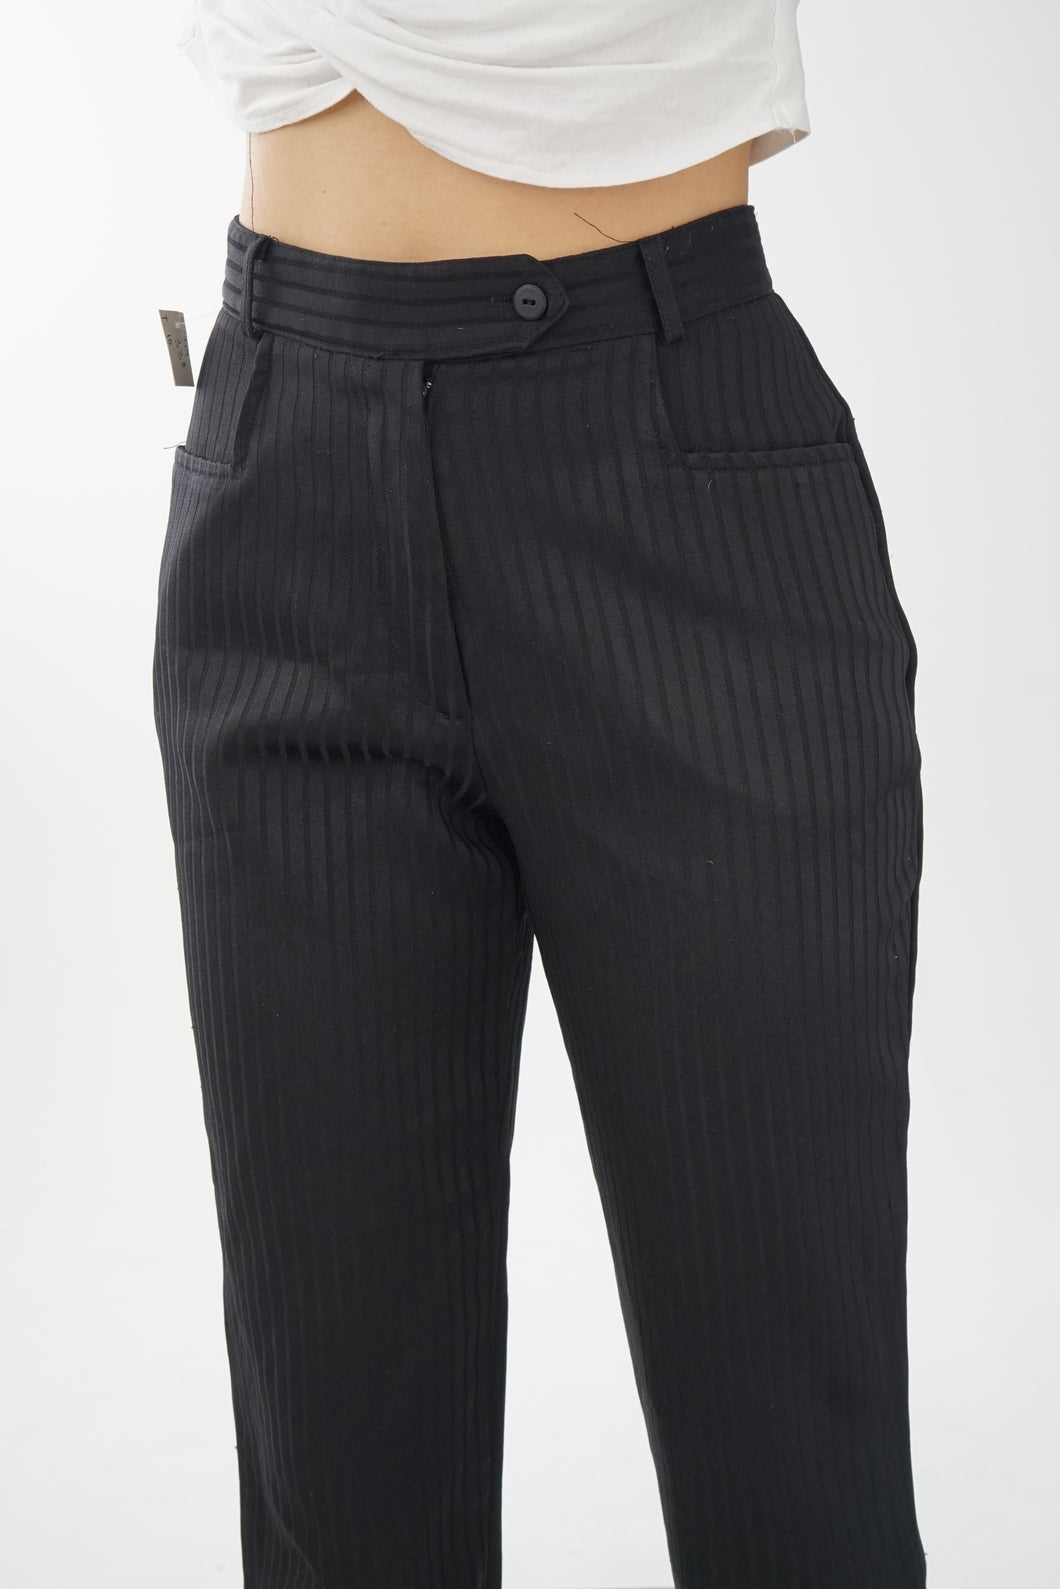 Pantalon noir à lignes Évidence taille haute pour femme taille 7 (S)